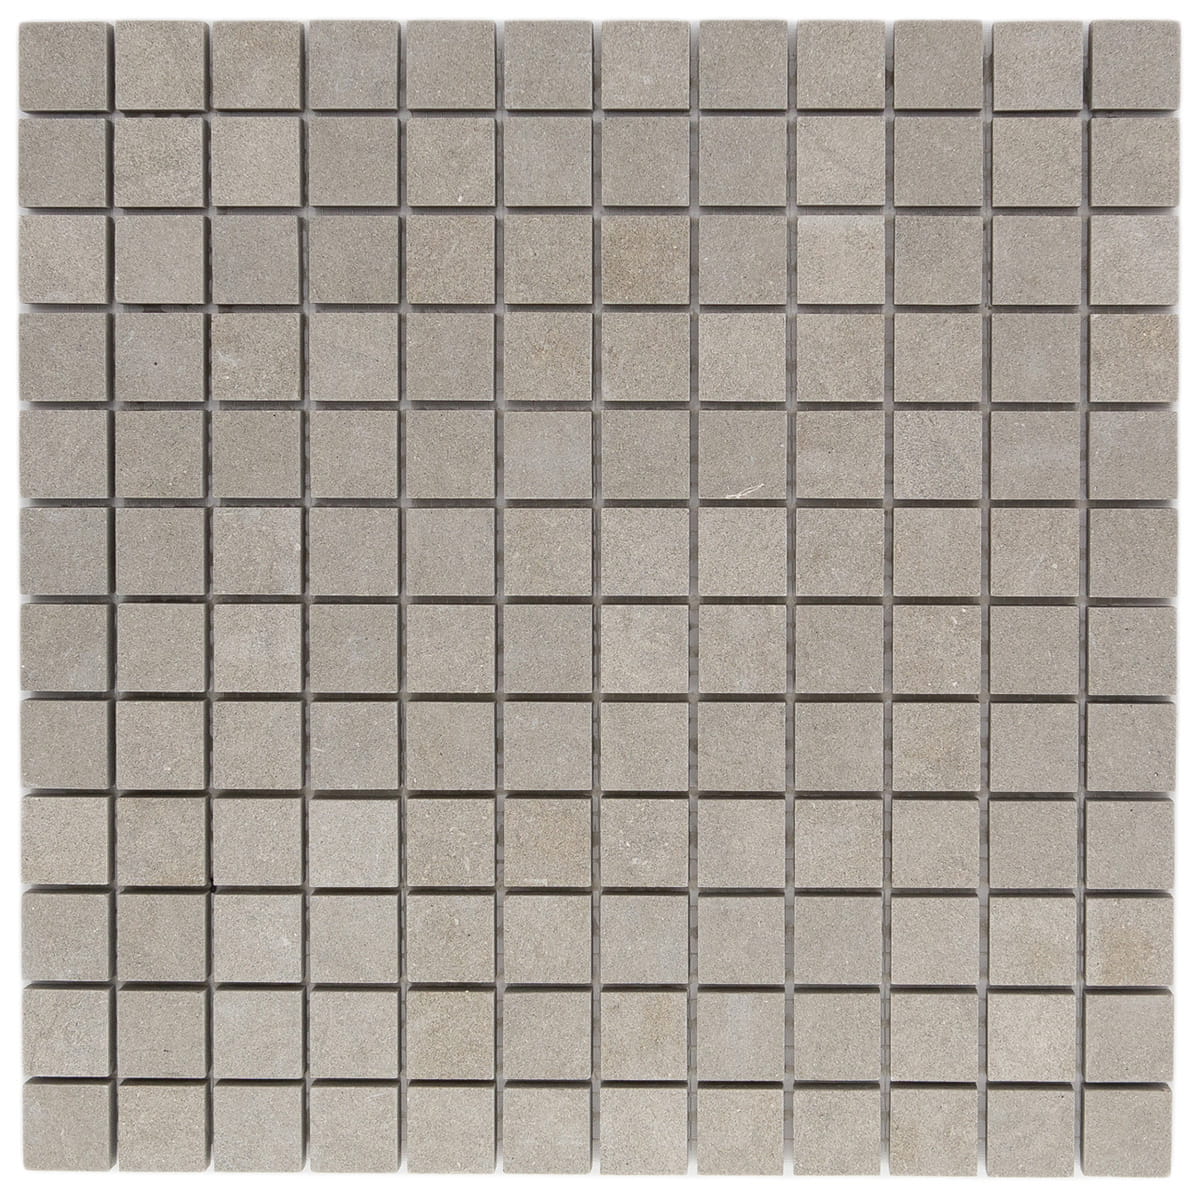 haussmann bateig blue limestone square mosaic tile 1x1 honed